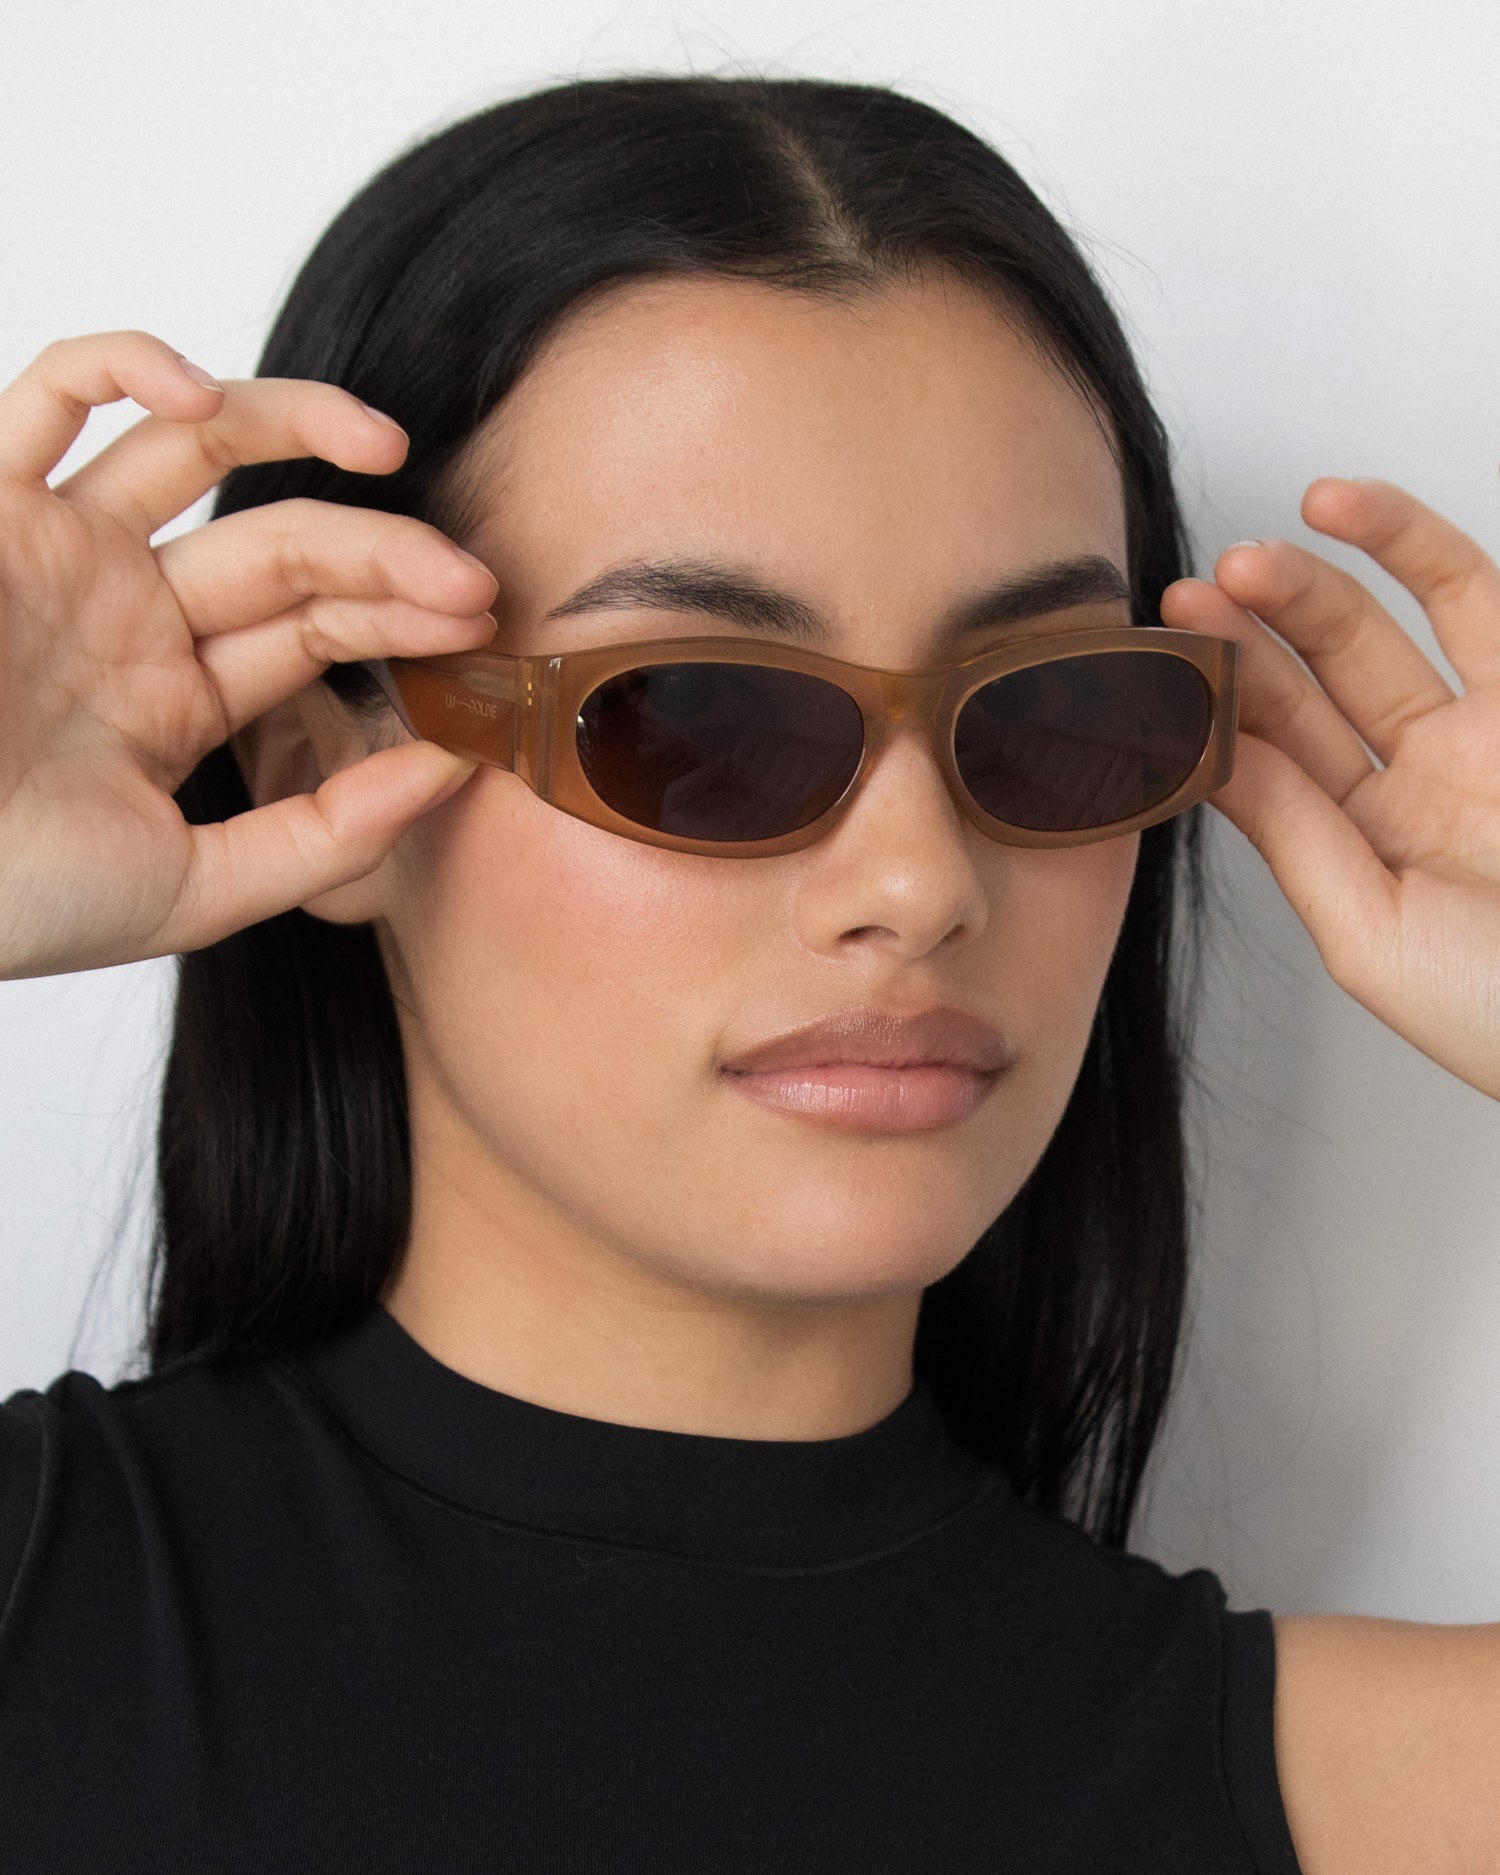 Romy Sunglasses in Cola by LU GOLDIE Eyewear